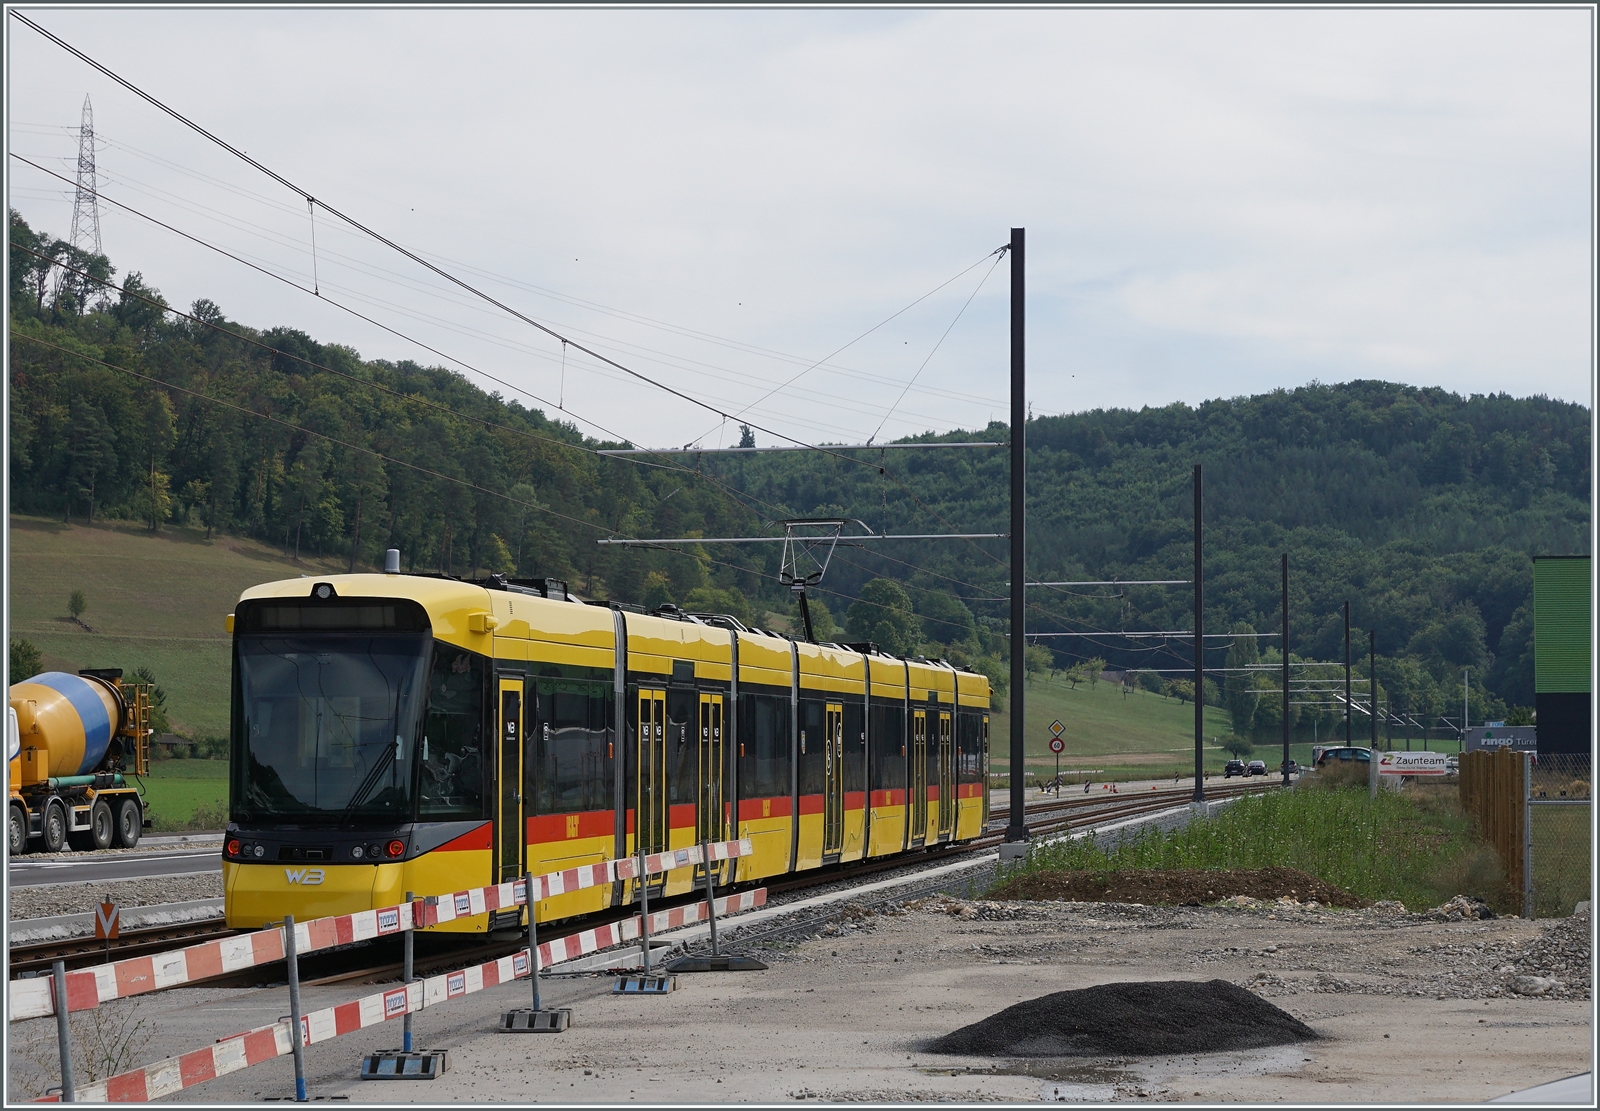 Umgespurt, ab morgen (11.12.22) verkehren wieder Züge im Waldenburgertal; die Strekce ist umgespurt und die neuen gelben Züge sind bereit, dass zumindest ein provisorischer Betrieb angeboten werden kann. Das Bild zeigt einen Testzug bei Bubendorf. 

30 Aug. 2022